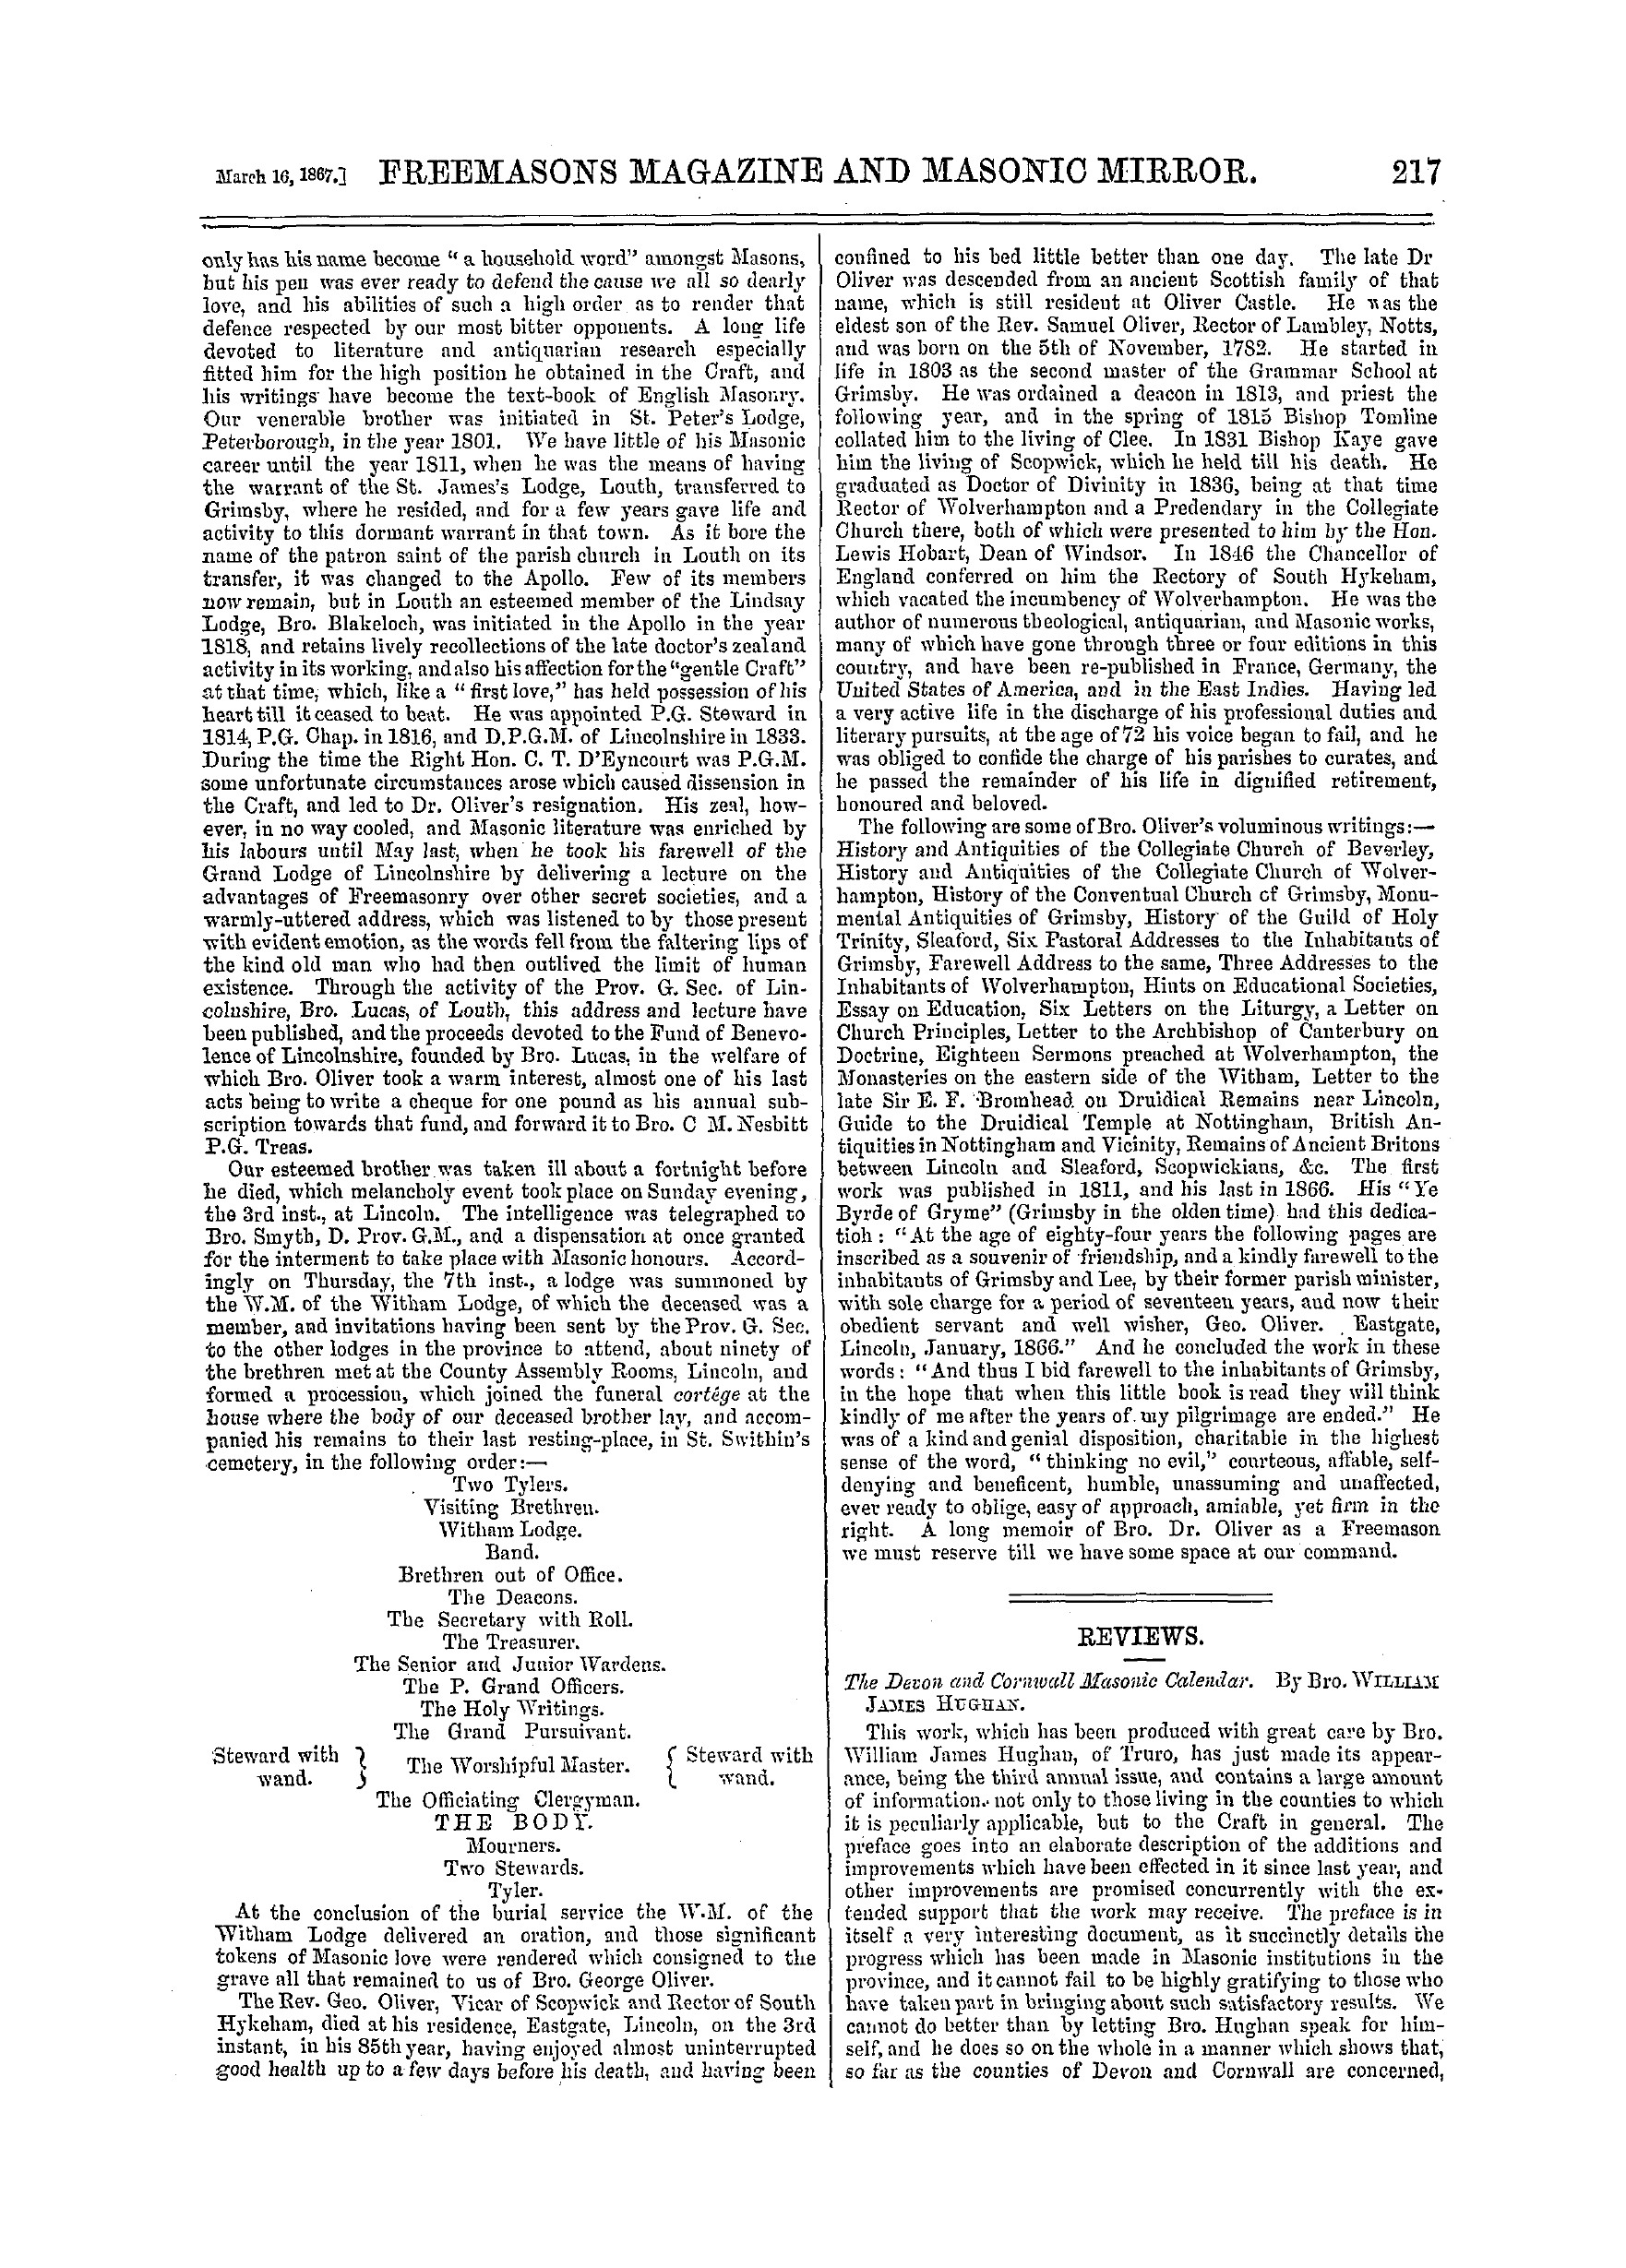 The Freemasons' Monthly Magazine: 1867-03-16: 17